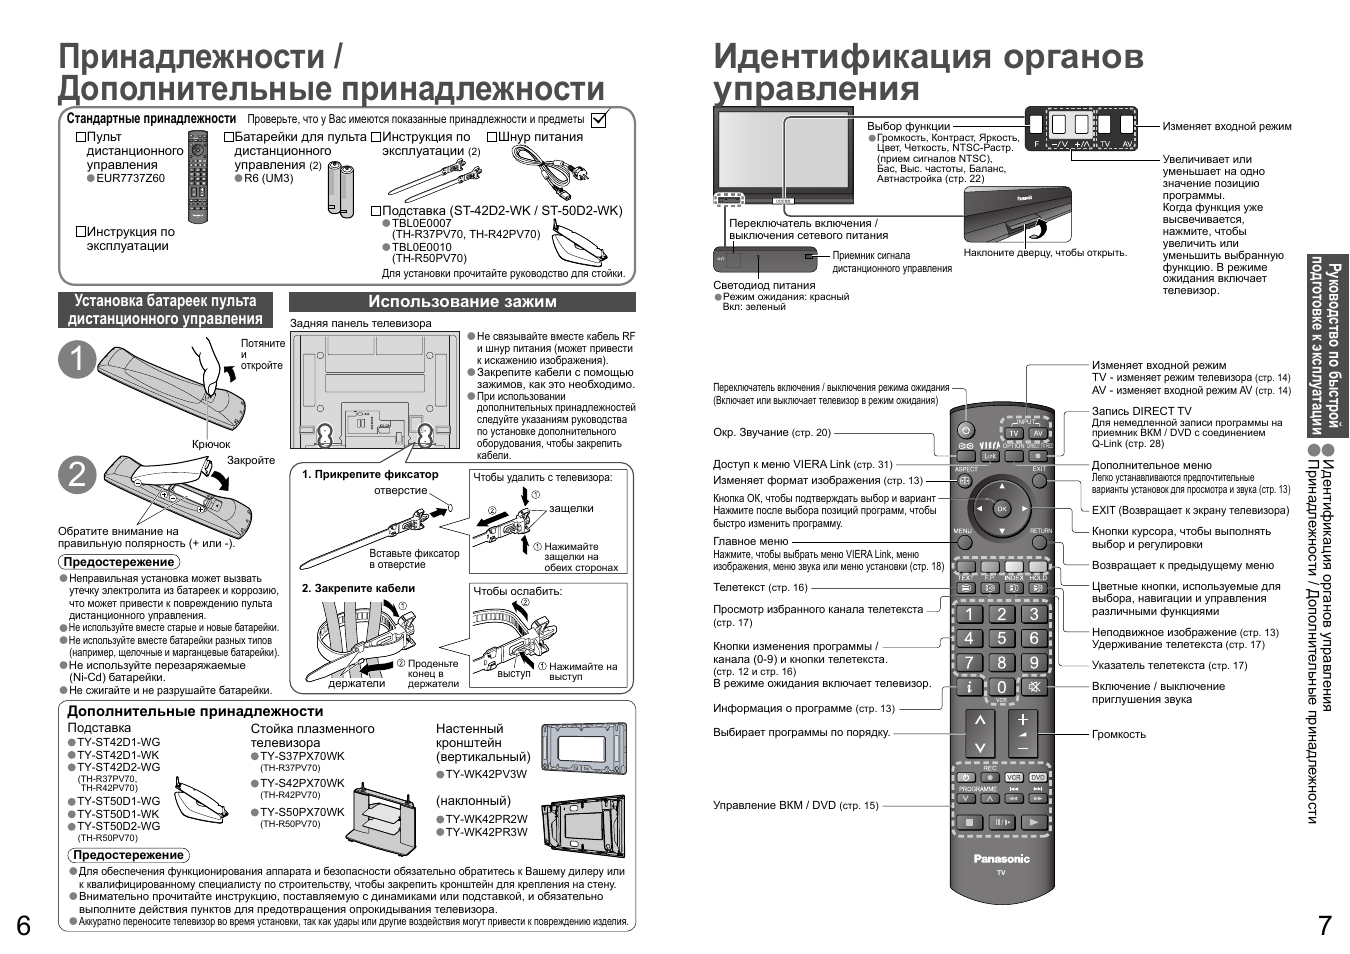 Инструкция для пульта. Panasonic TV